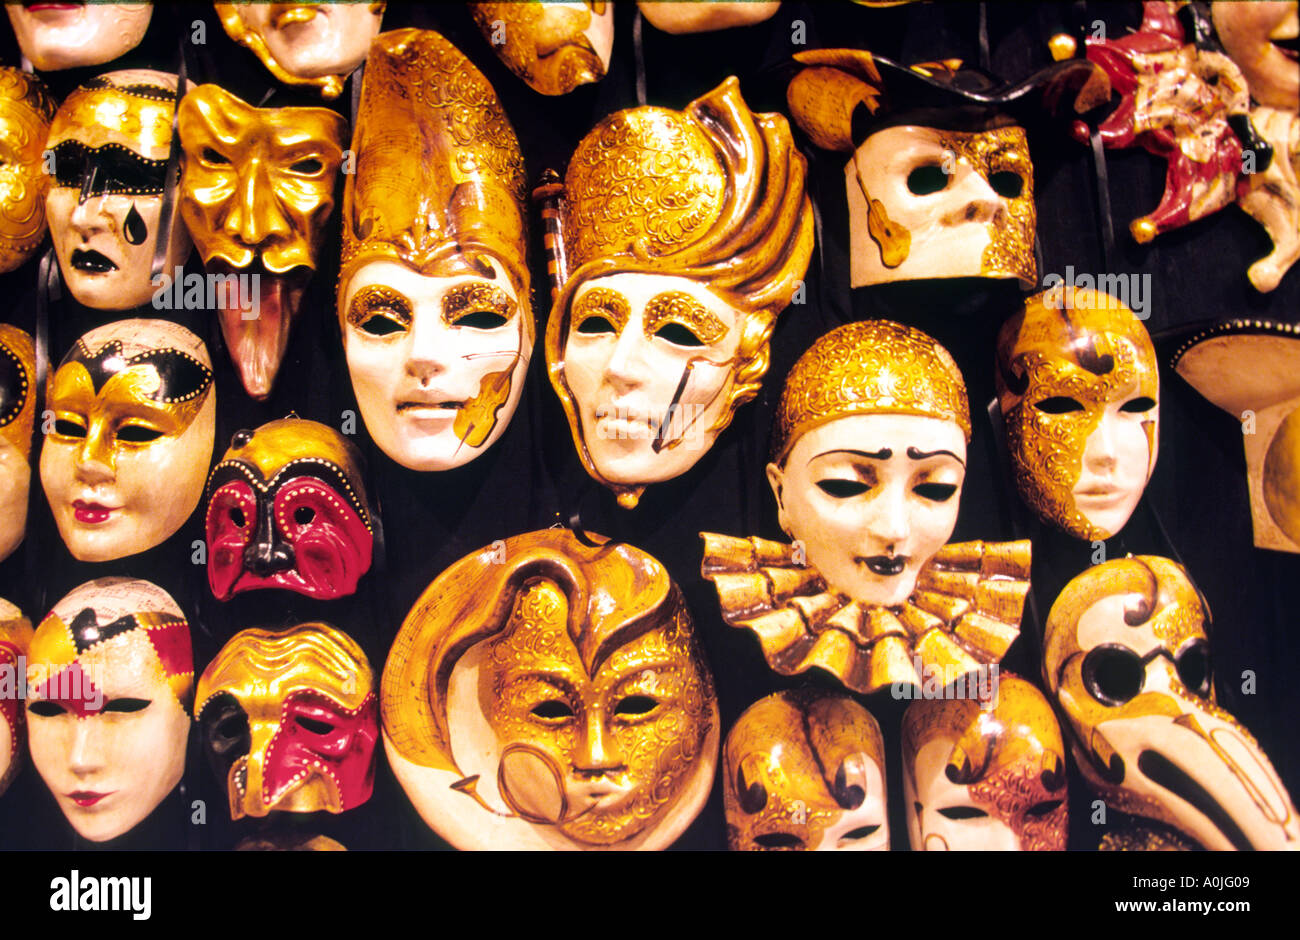 Italy Venice carnival masks Stock Photo